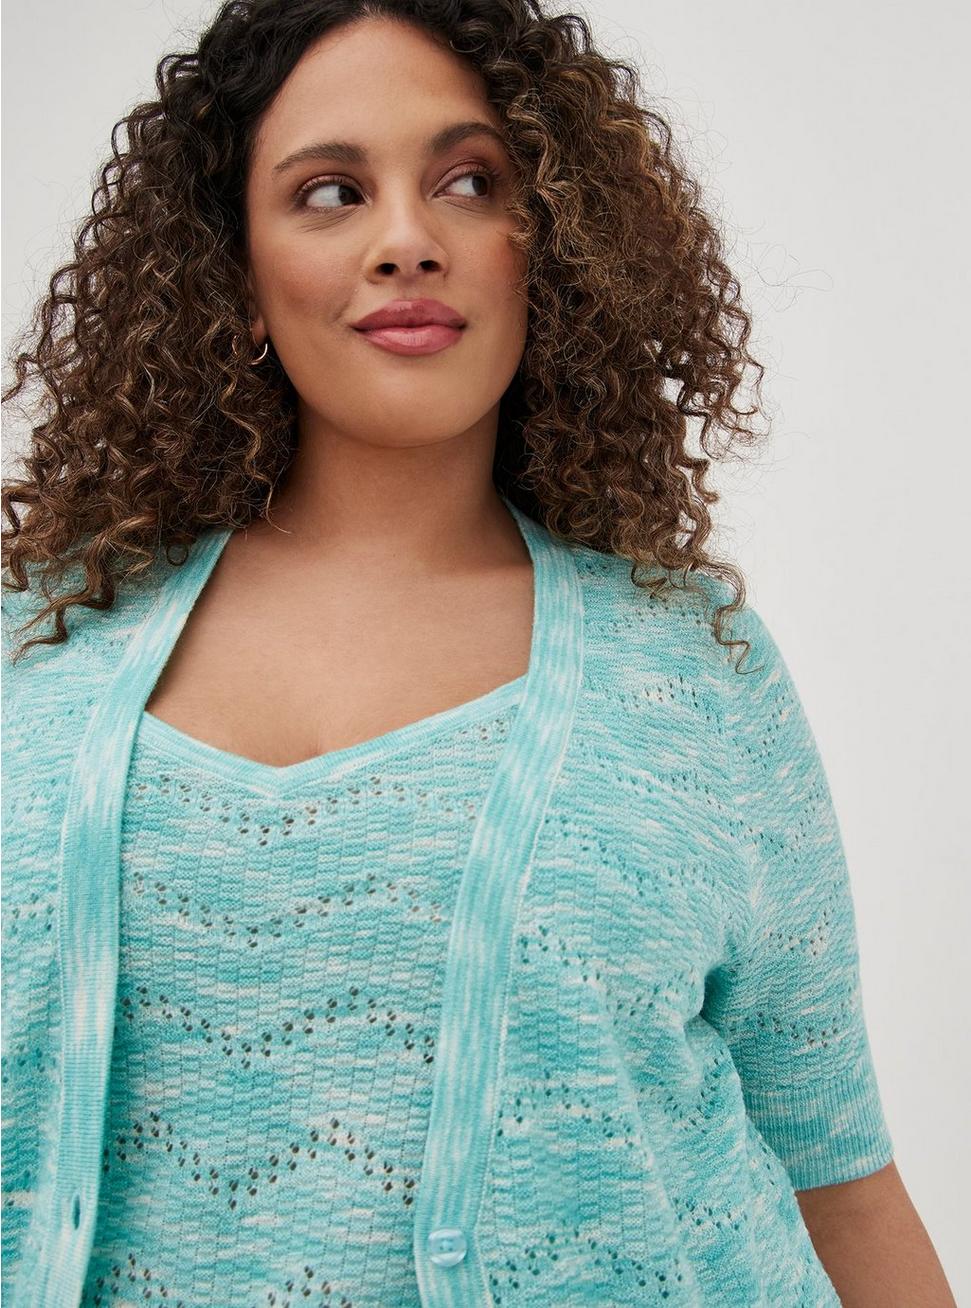 Pointelle Cardigan V-Neck Short Sleeve Sweater, BLUE, alternate